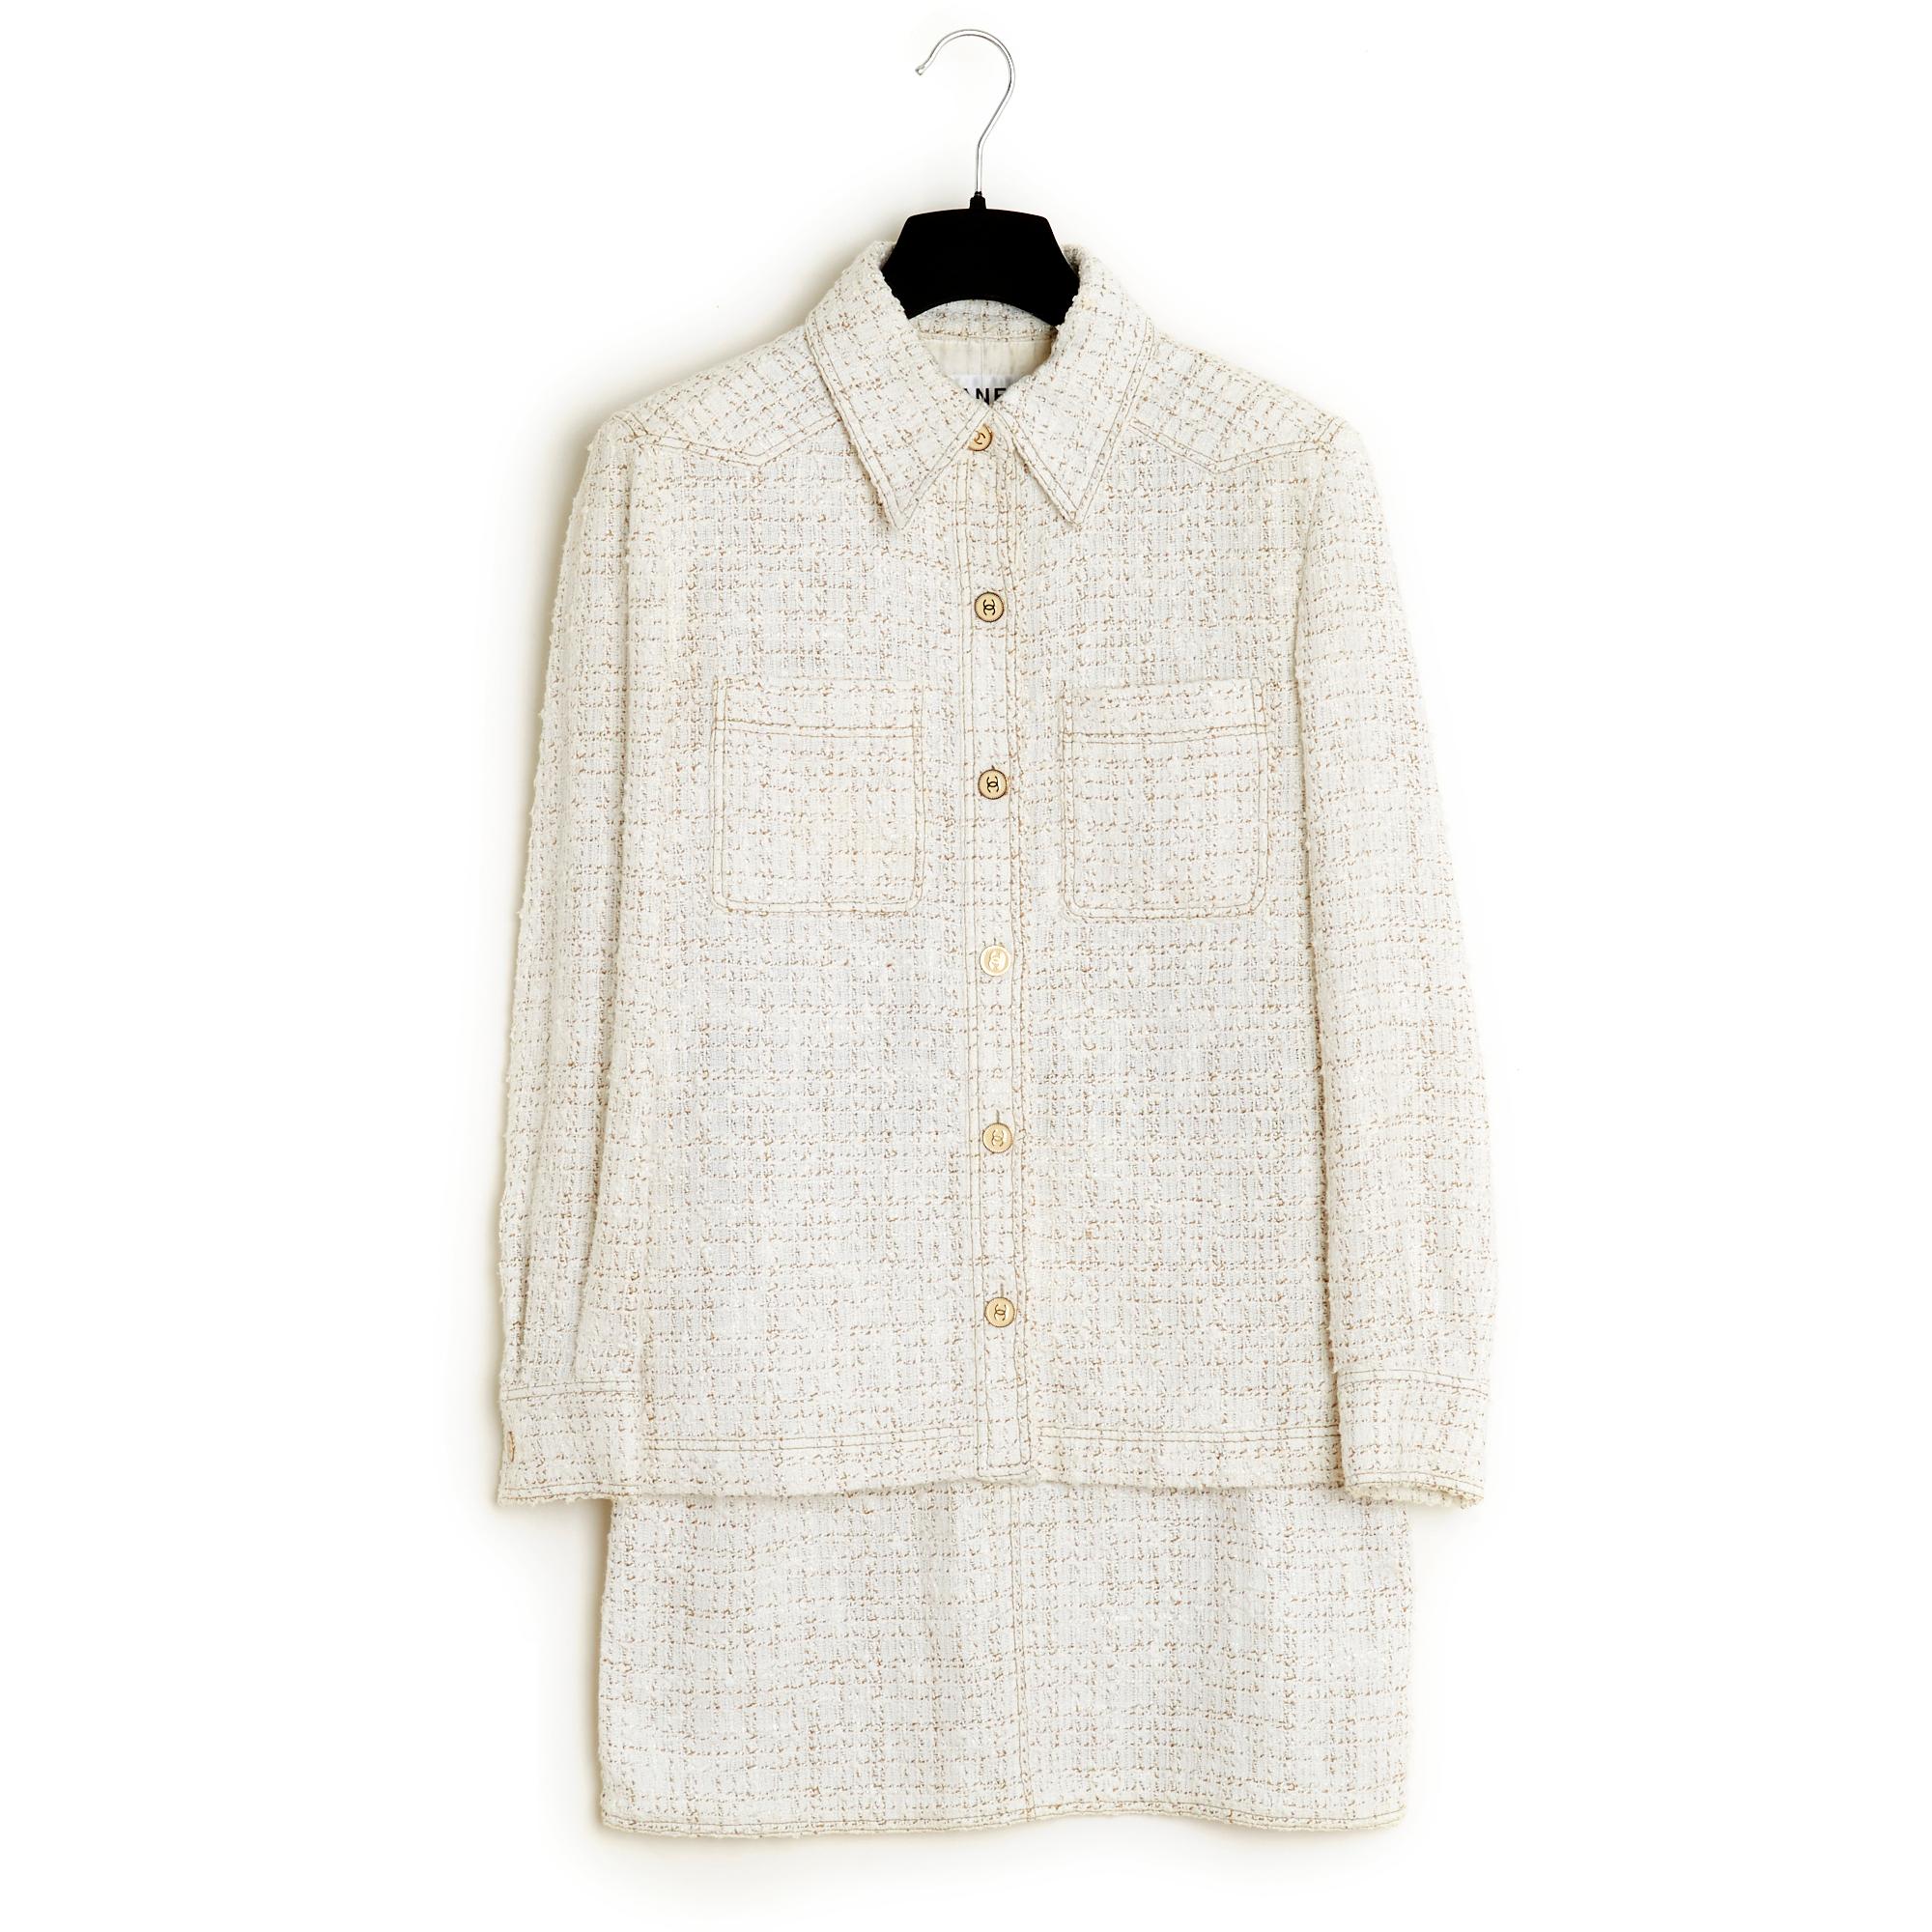 Collection Chanel printemps été 2001 en tweed de coton mélangé écru et beige composée d'une veste chemise, col classique fermé par 6 boutons logo CC, 2 poches plaquées sur la poitrine, manches longues fermées par des boutons assortis, et d'une jupe